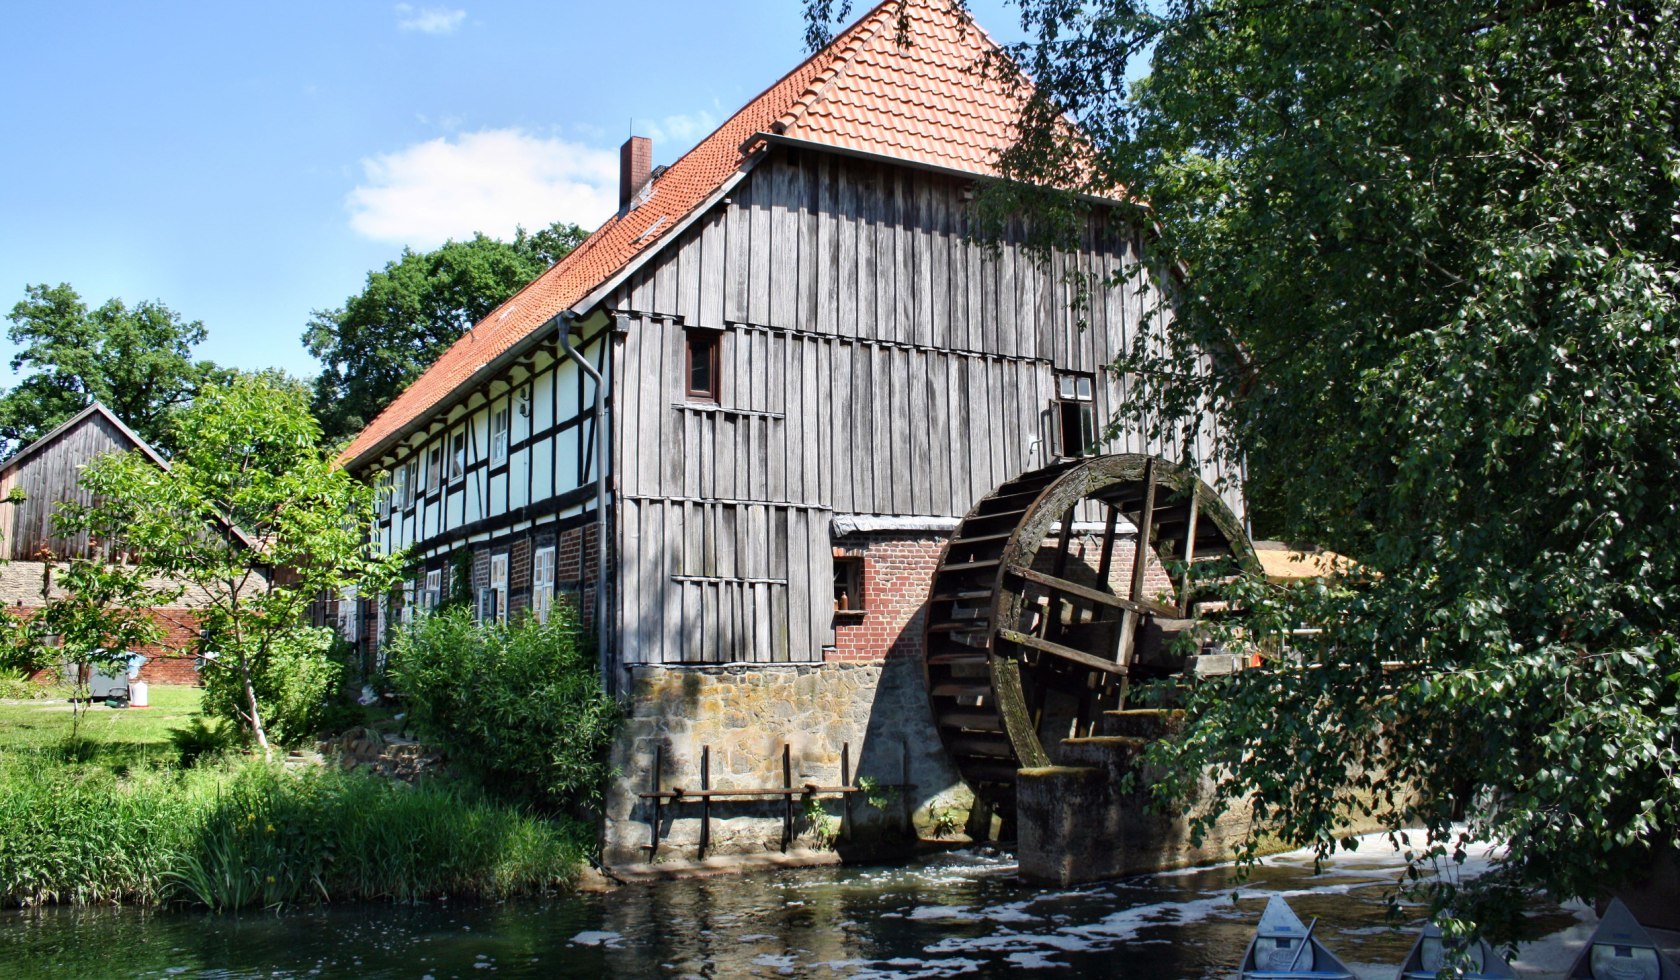 Eltzer-molen in Fuhse, © Dieter Goldmann / pixelio